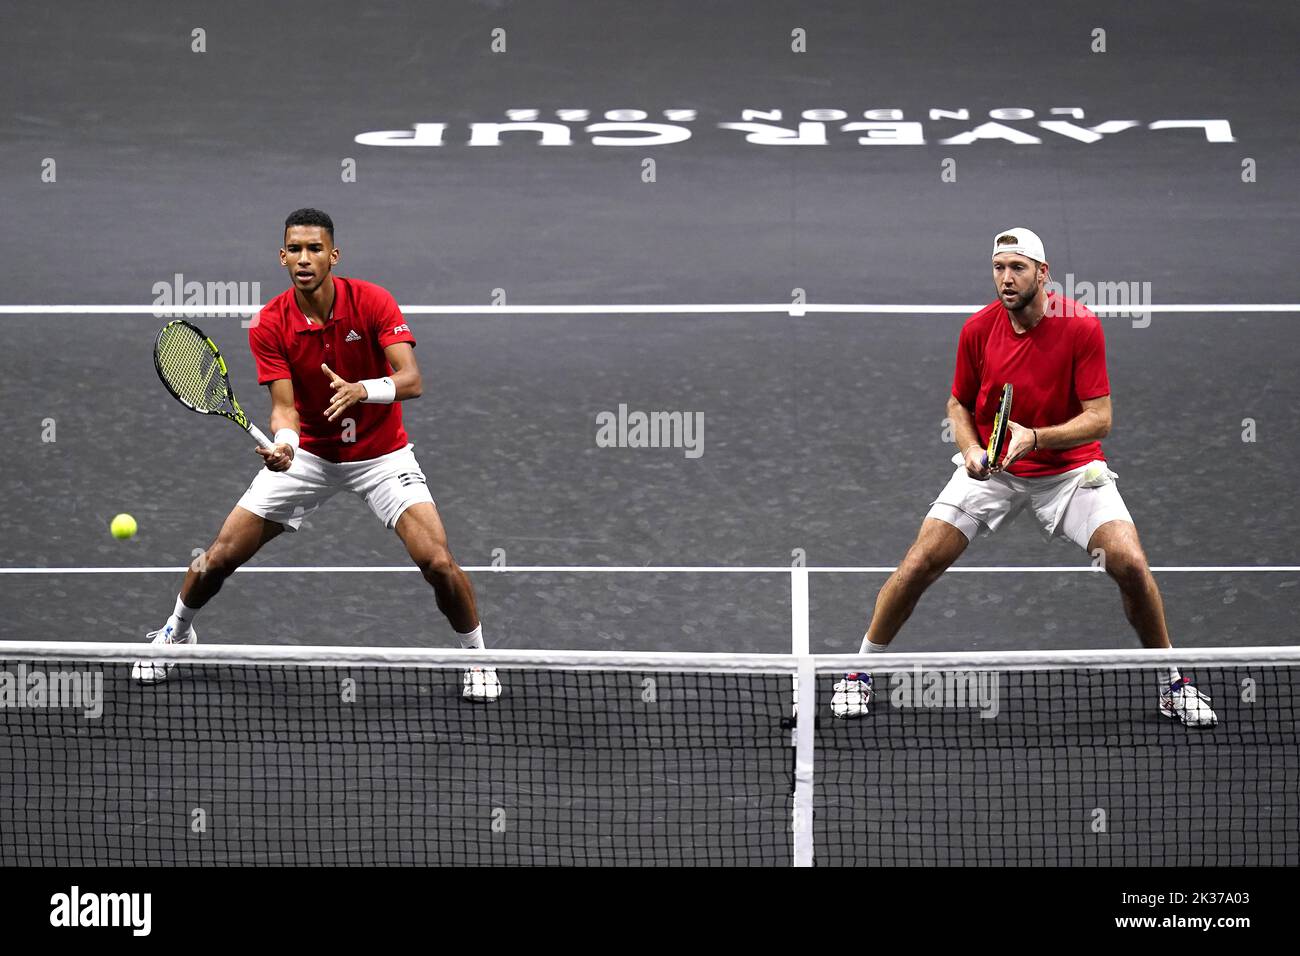 Felix Auger Aliassime (izquierda) y Jack Sock en acción contra Andy Murray y Matteo Berrettini en el partido de dobles en el tercer día de la Copa Laver en el O2 Arena, Londres. Fecha de la foto: Domingo 25 de septiembre de 2022. Foto de stock